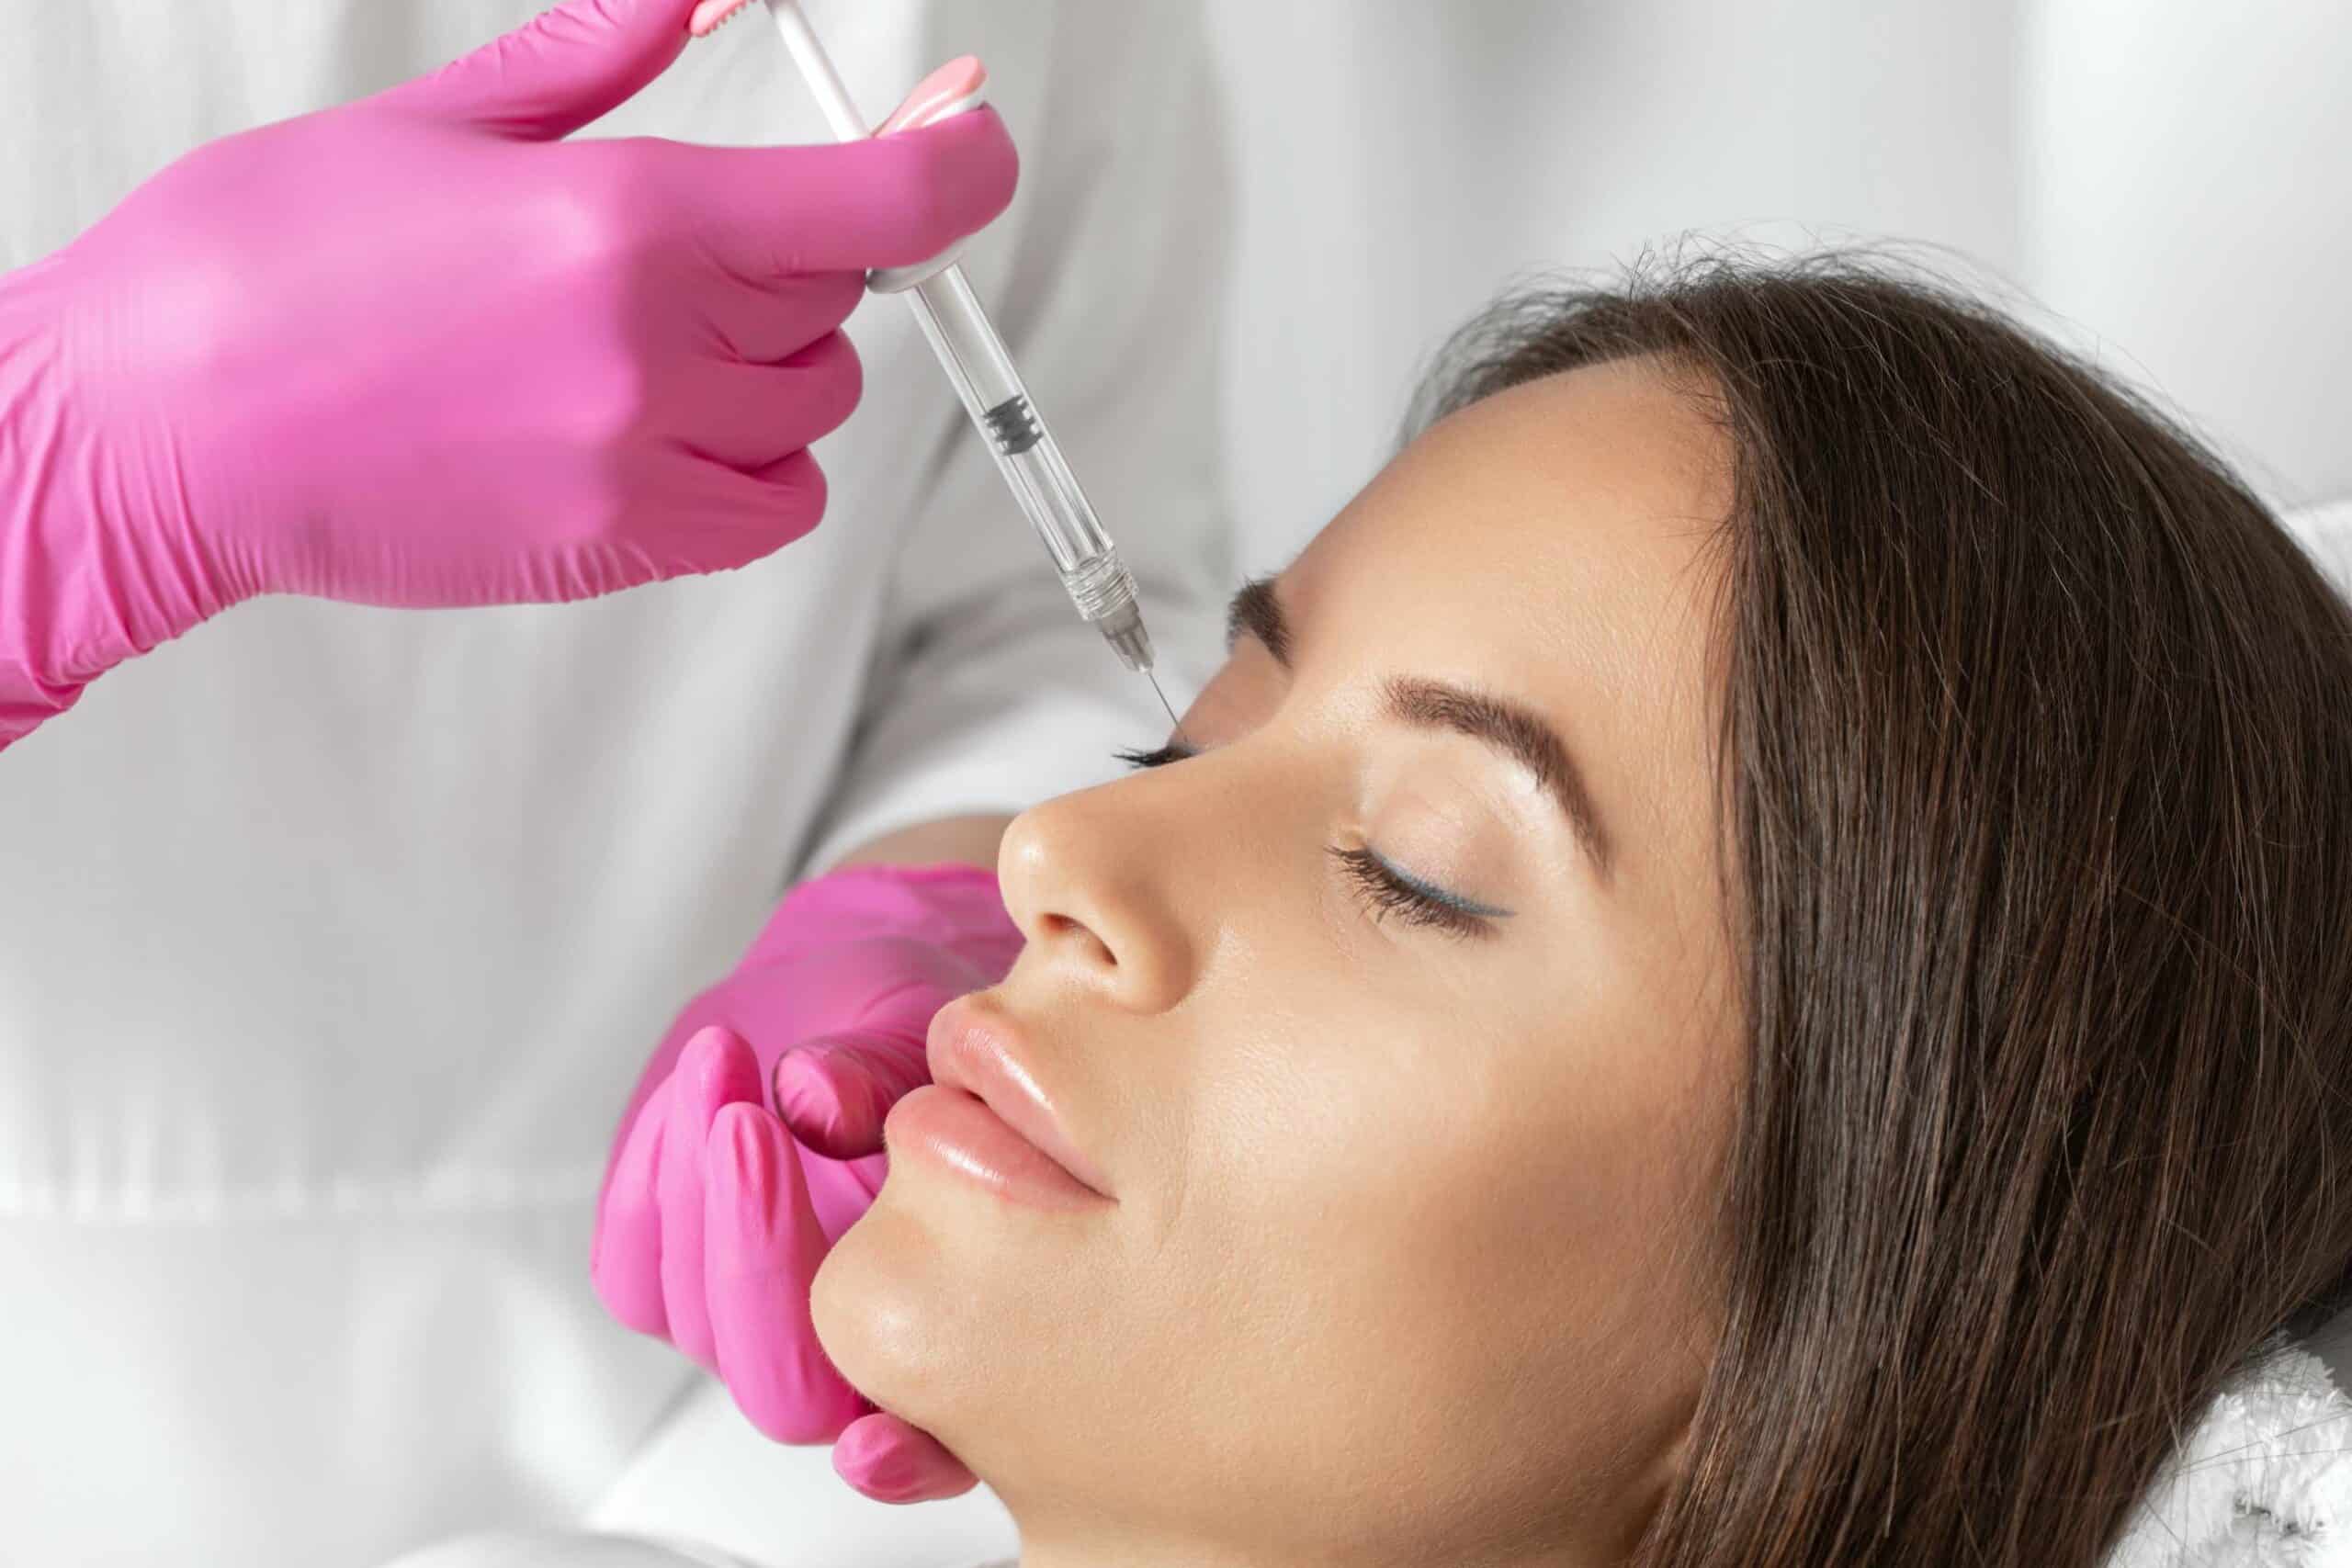 Médecine esthétique du nez : acide hyaluronique ou botox ? | Dr Luneau | Aix en Provence